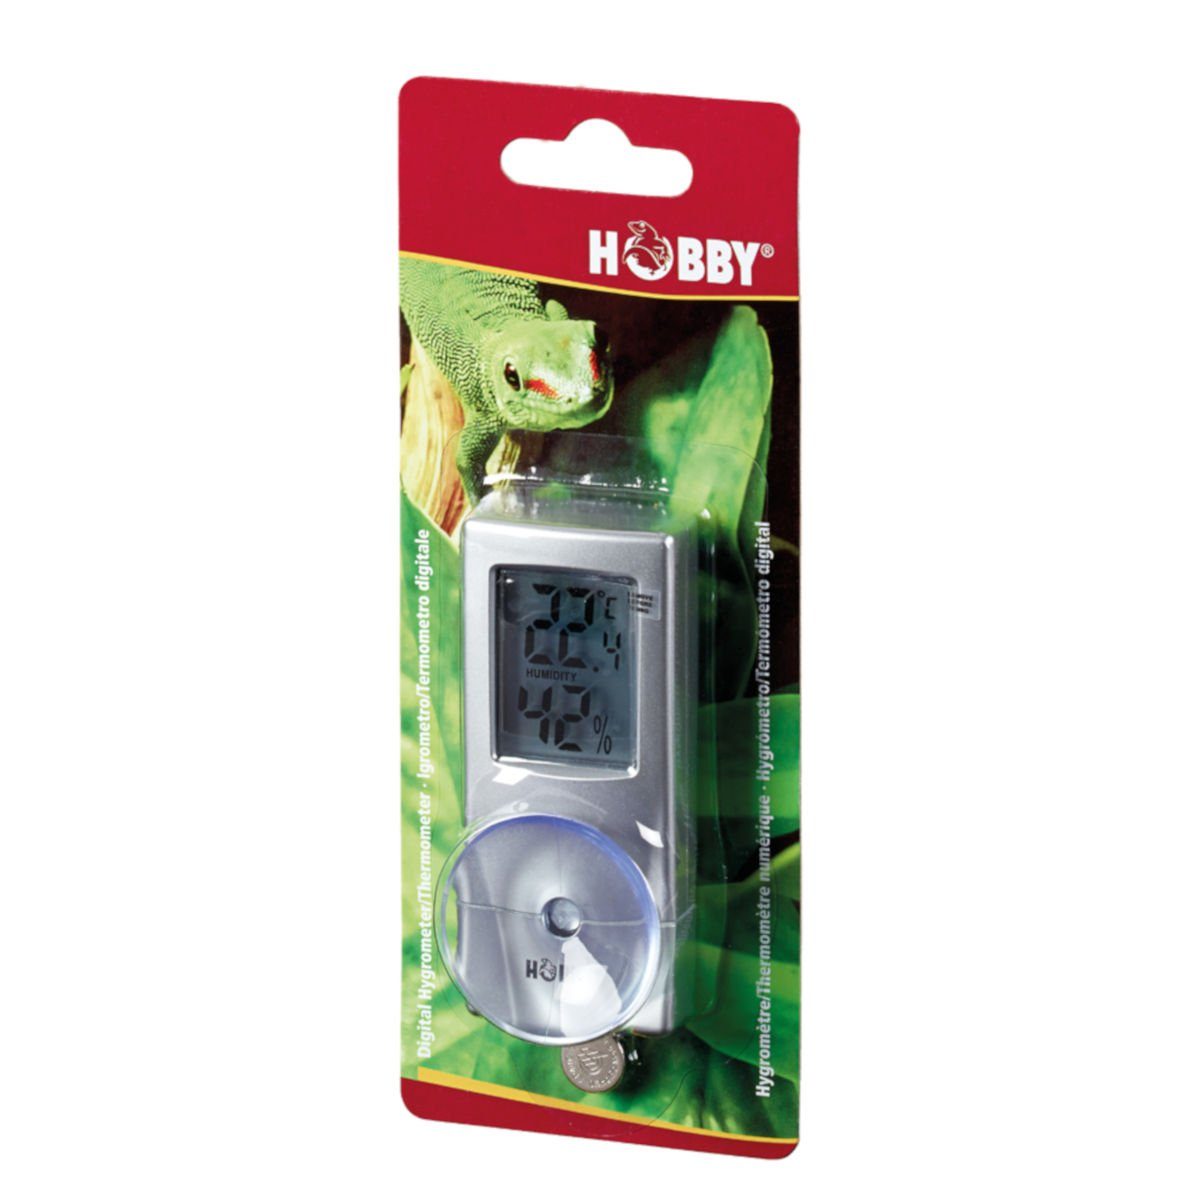 Digitales Hygrometer HOBBY (DHT2) Hygrometer/Thermometer